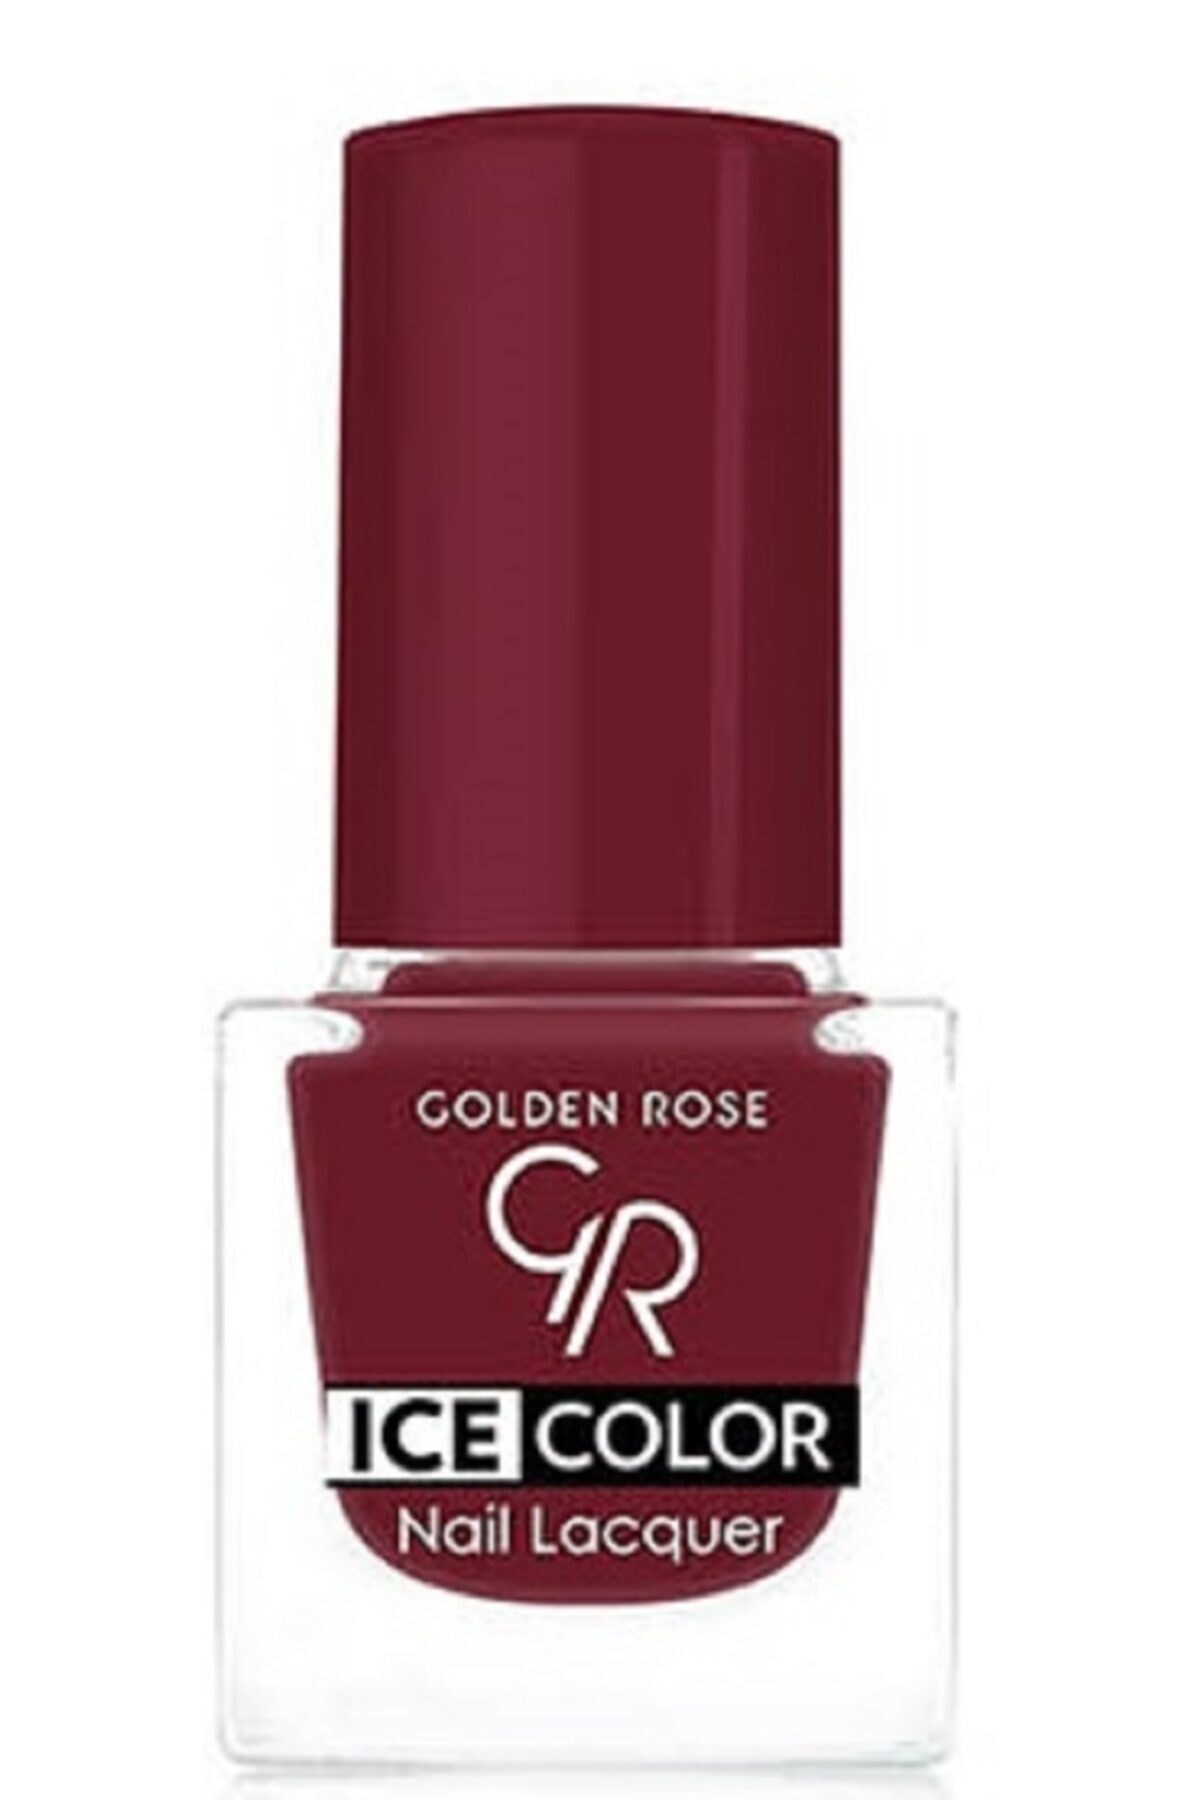 لاک ناخن یخی آیس چیک ICE شماره 152 رنگ آبی گلدن رز Golden Rose